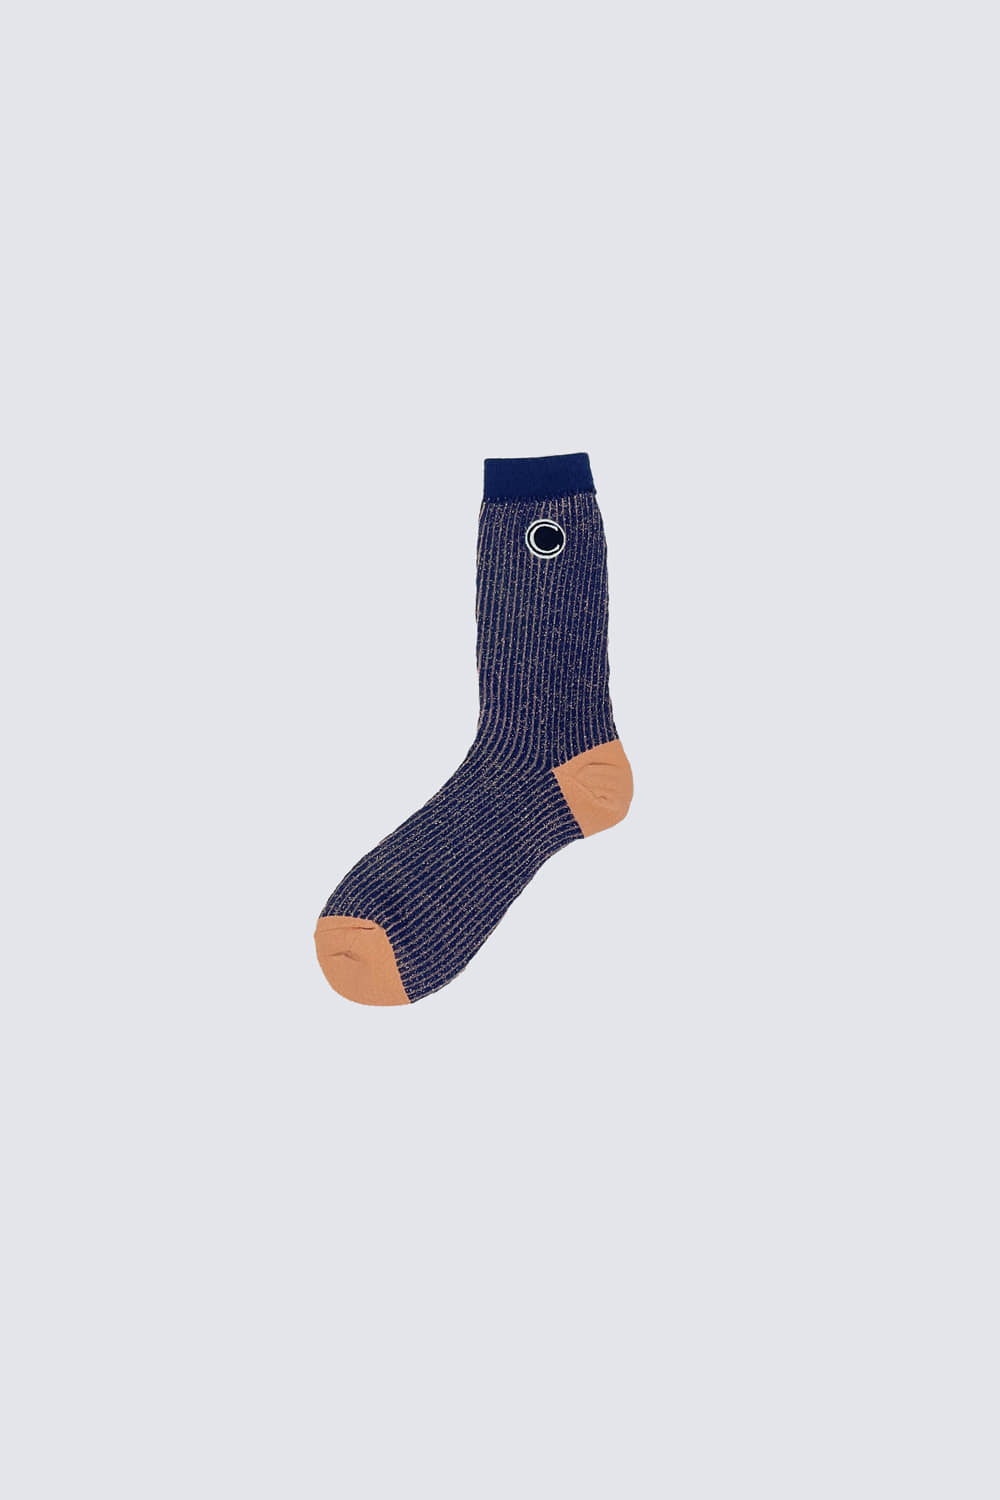 Twinkle stripe socks_navy